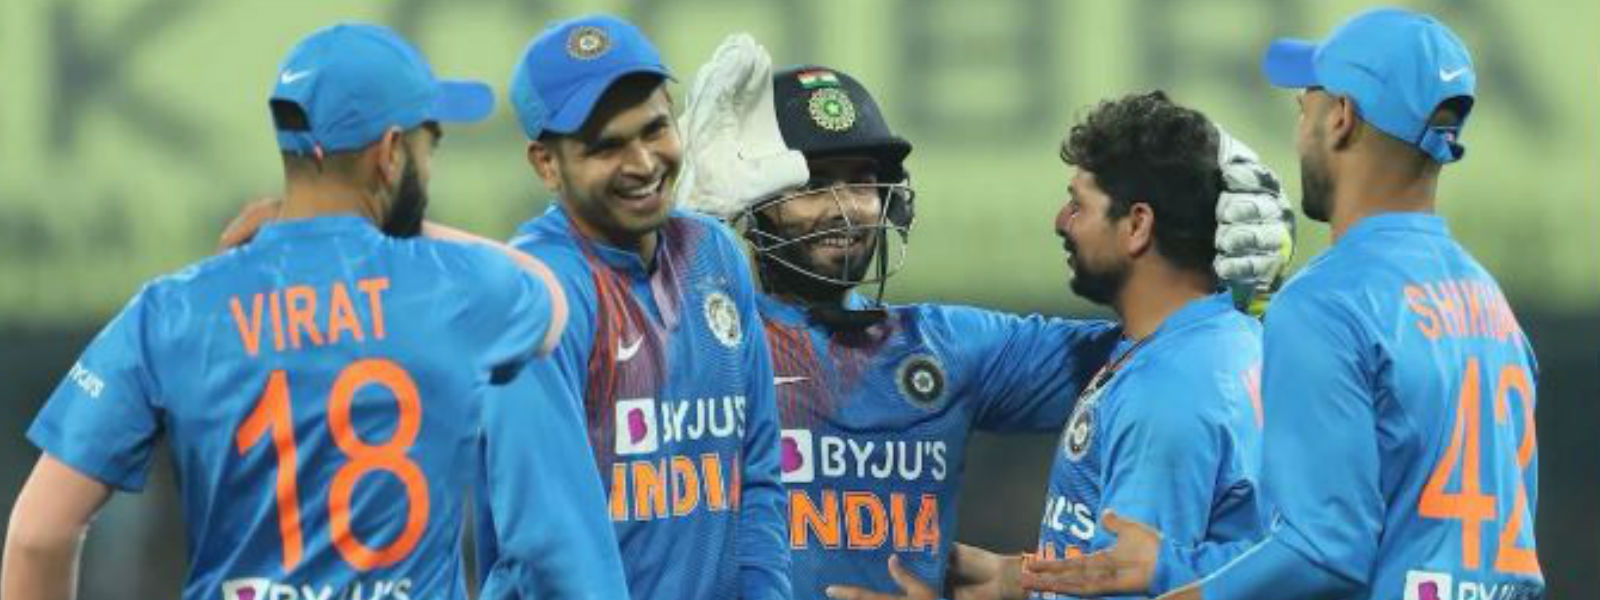 இரண்டாவது சர்வதேச T20 இல் இந்தியா​ வெற்றி 